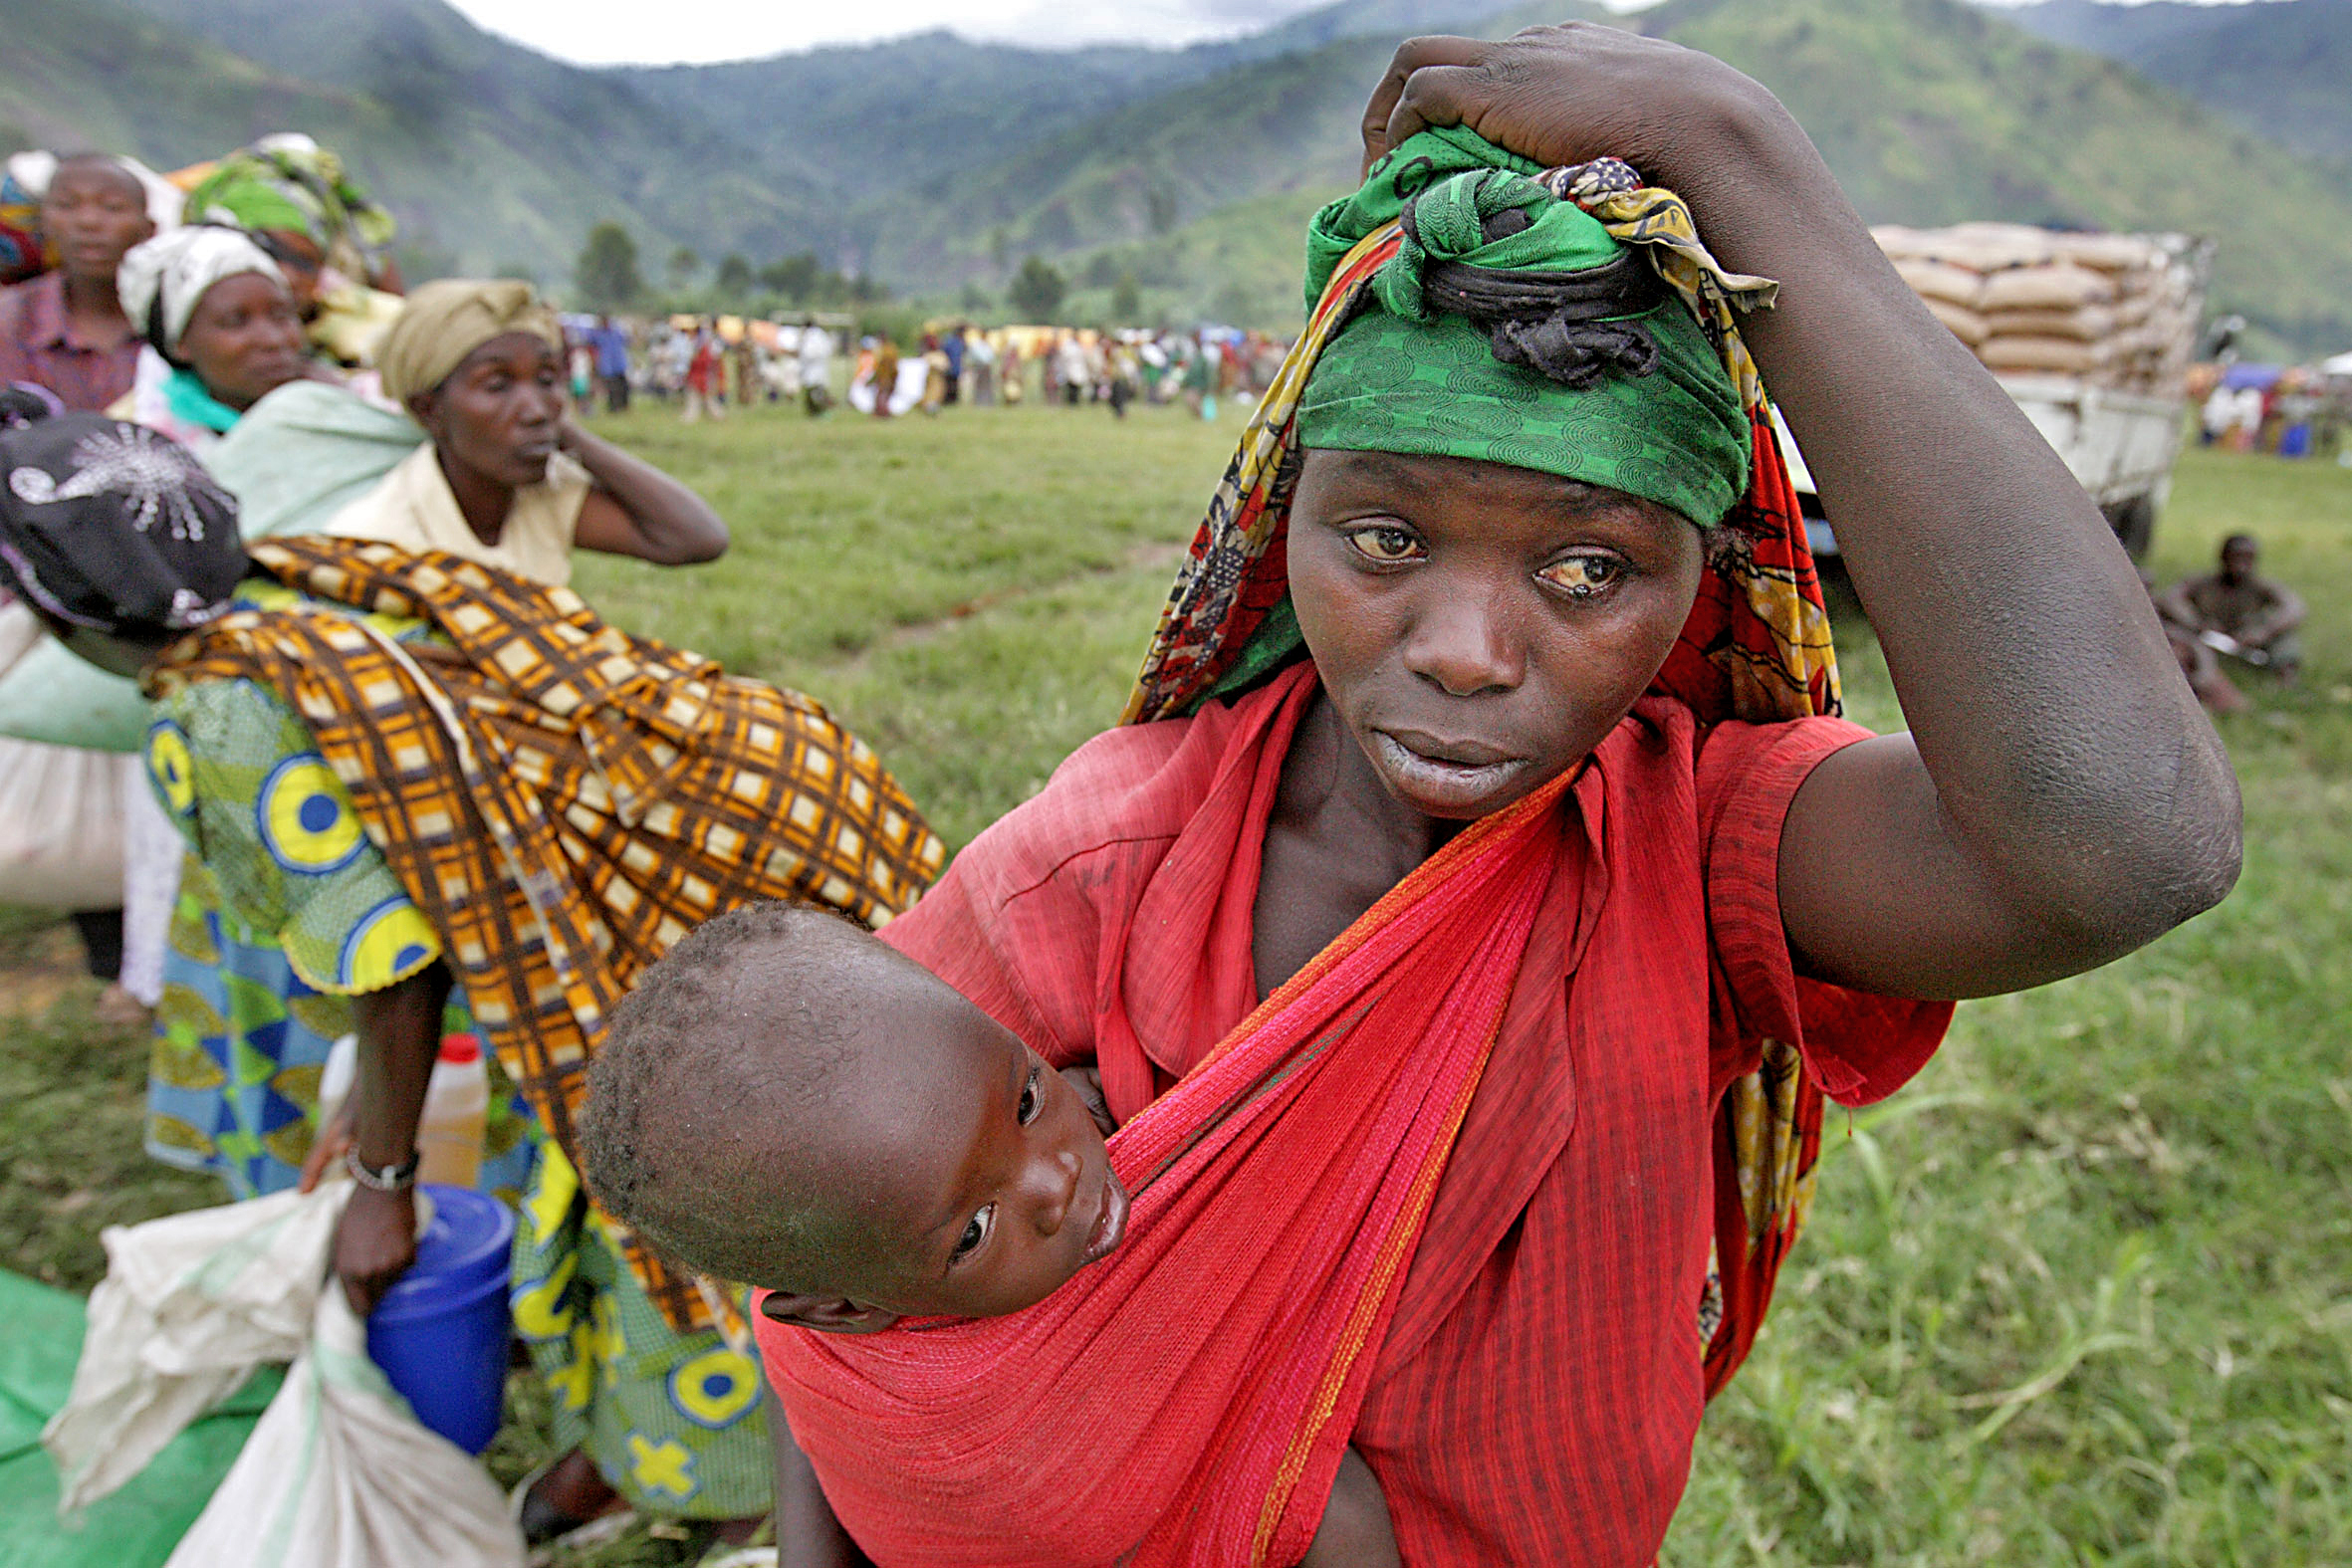 Frau mit Kind in der DR Kongo, wo Ebola um sich greift – jetzt spenden & helfen! (Archivbild)